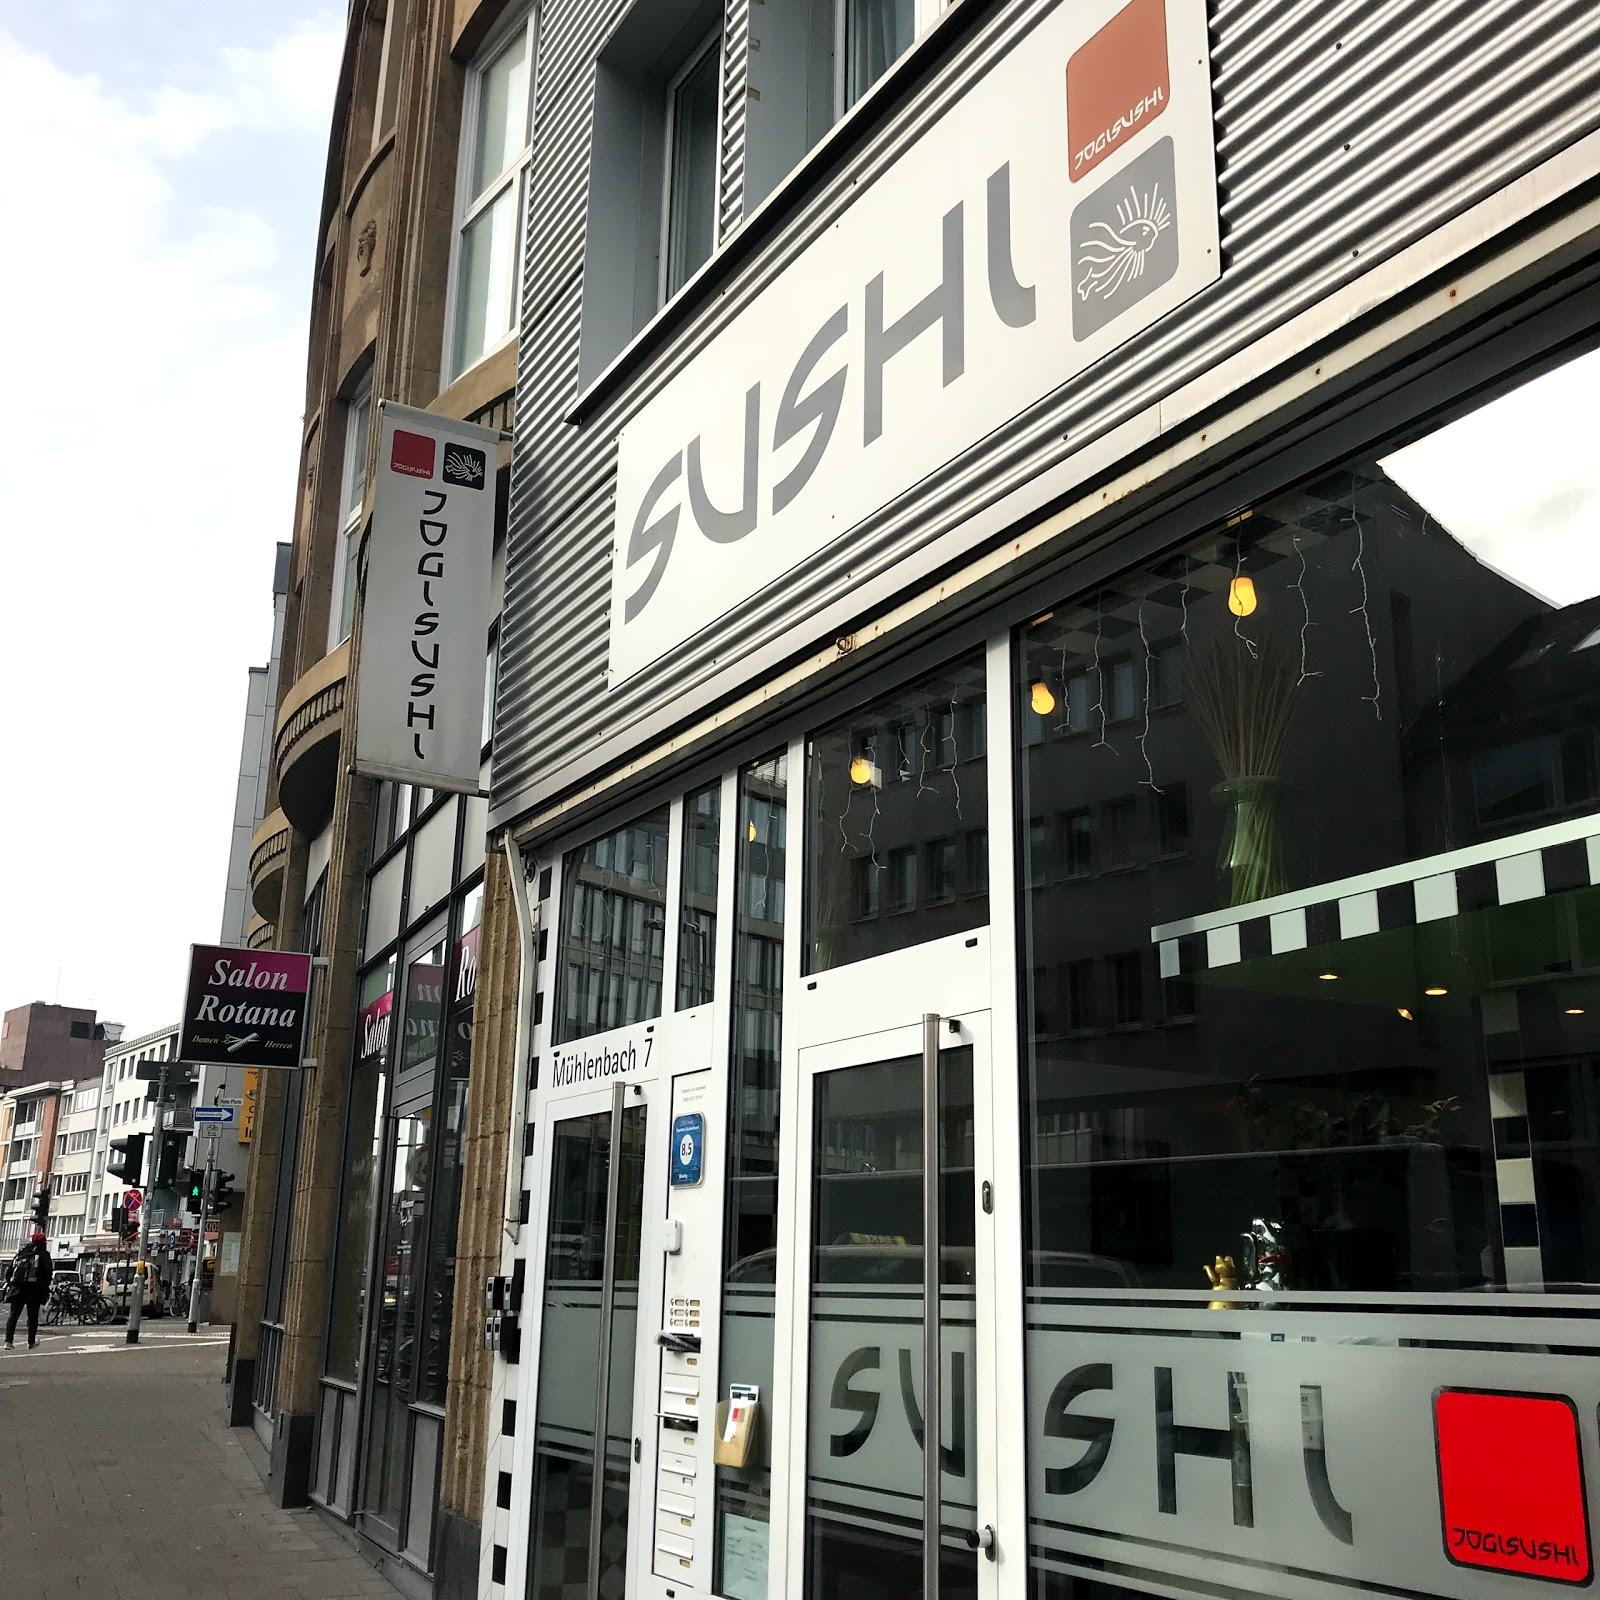 Restaurant "Jogi Sushi Take Away -" in Köln